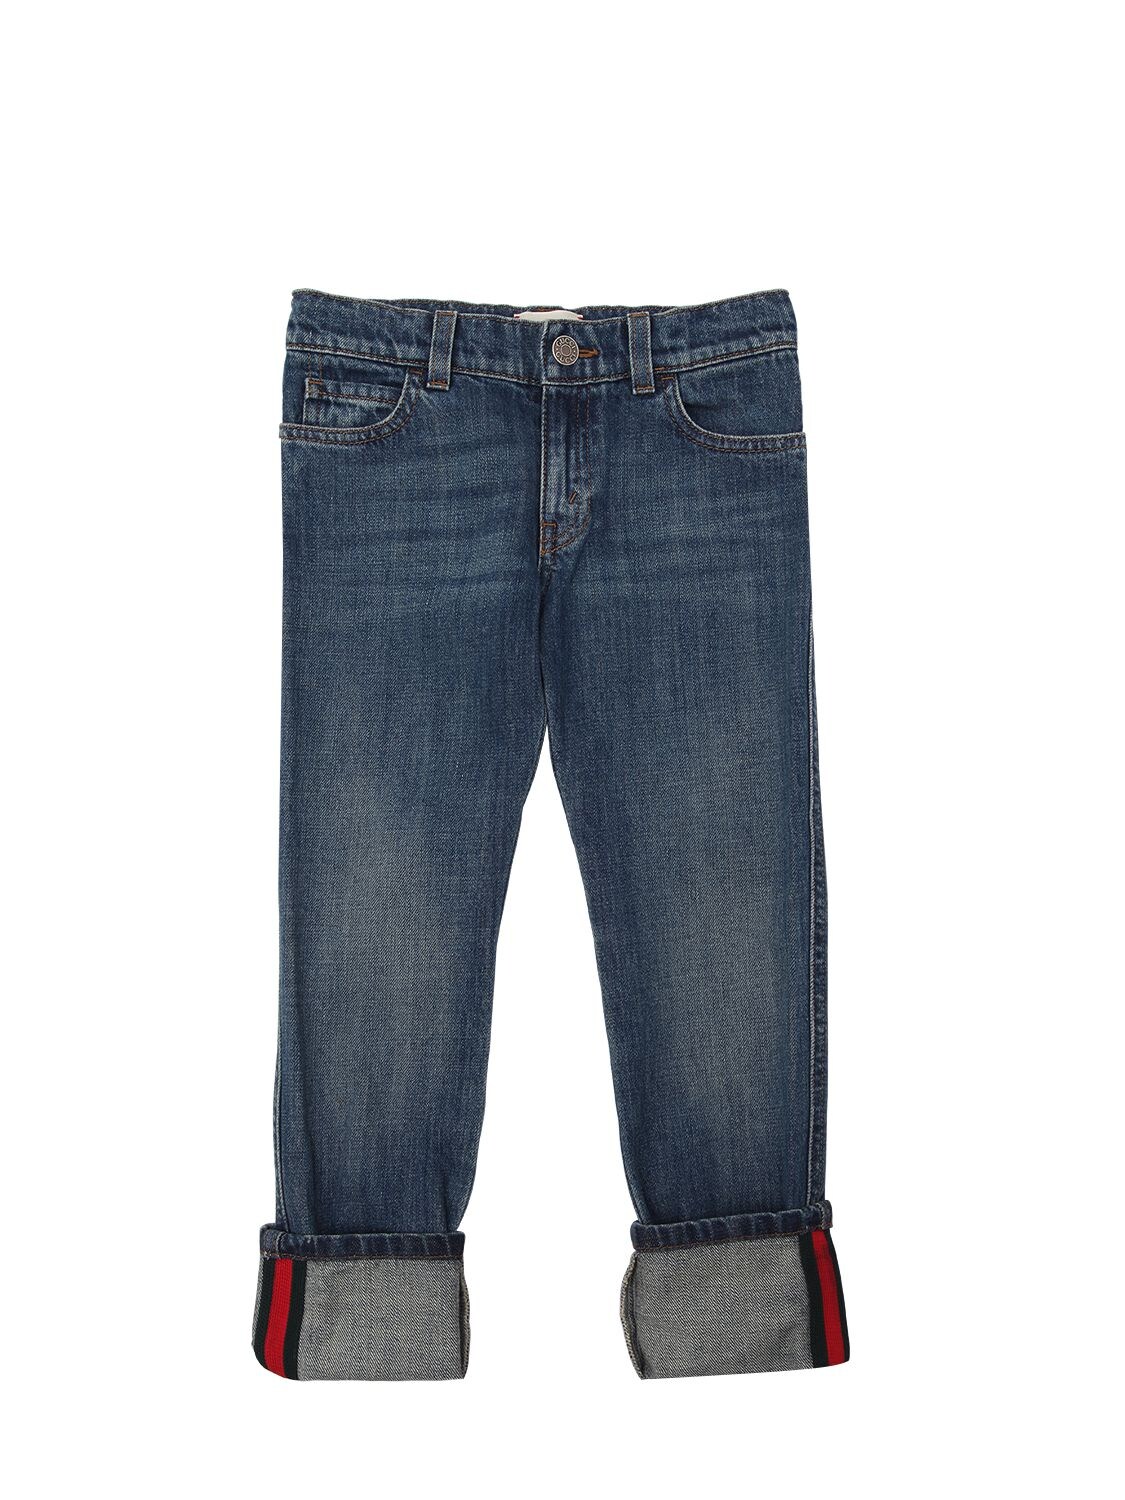 Gucci Kids' Stretch Cotton Denim Jeans